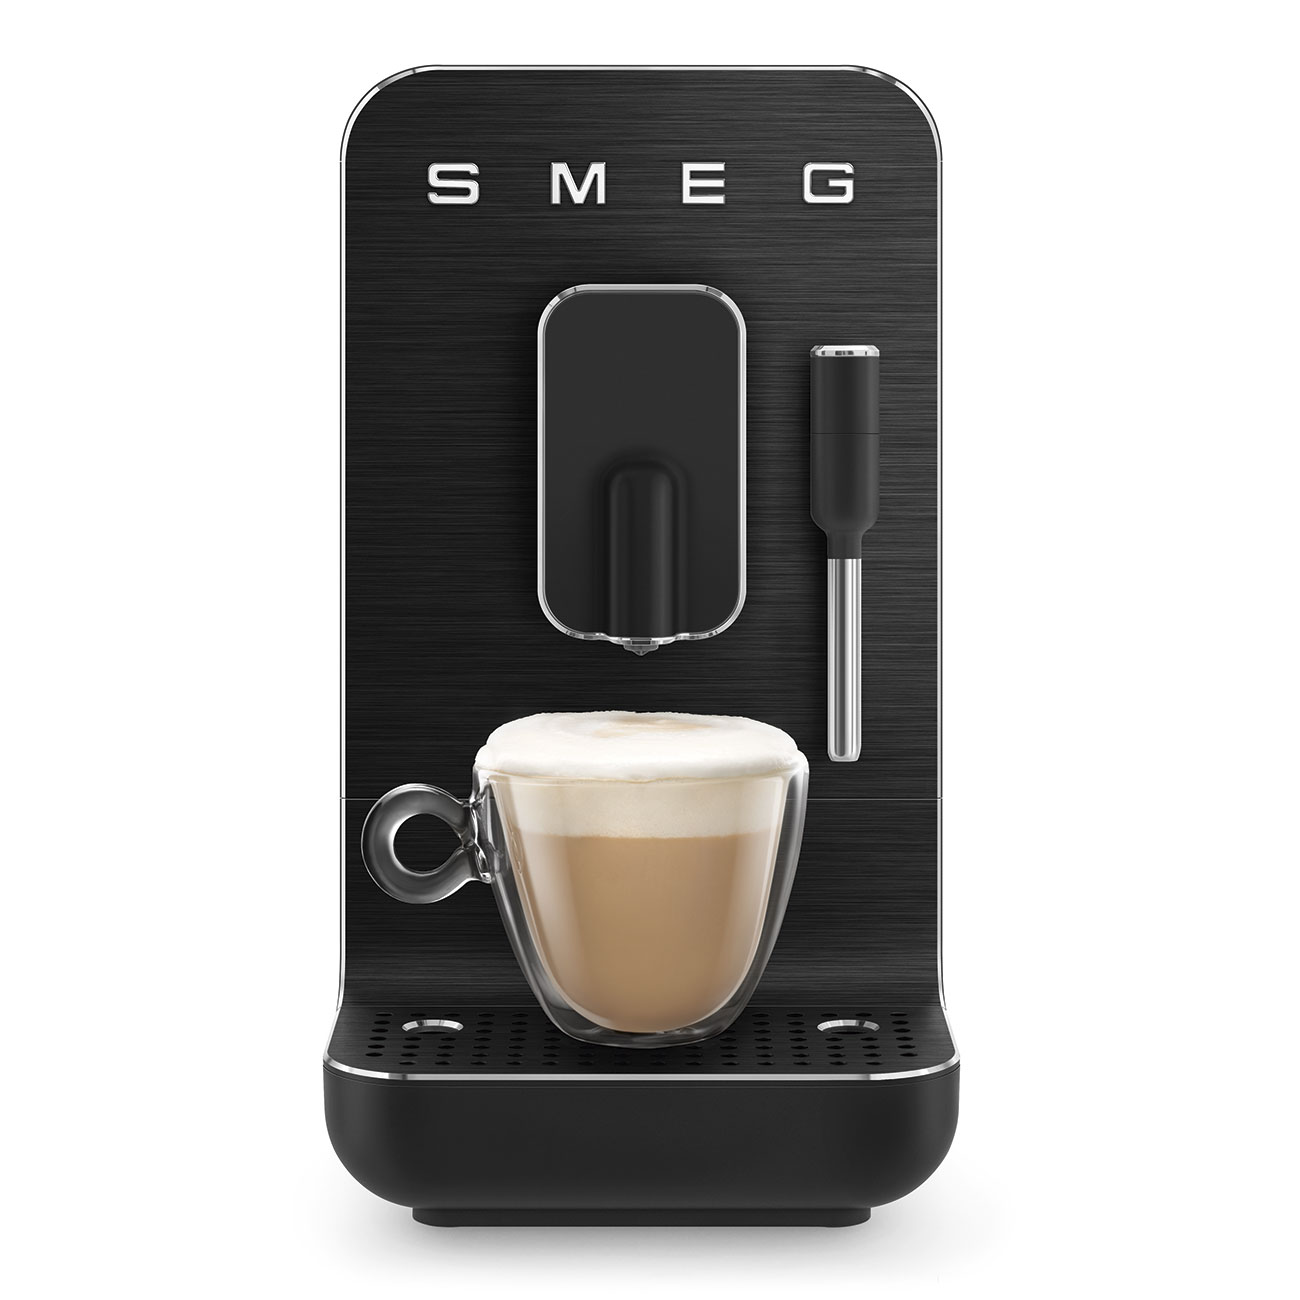 Kompakt-Kaffeevollautomat, Full Black-Matt